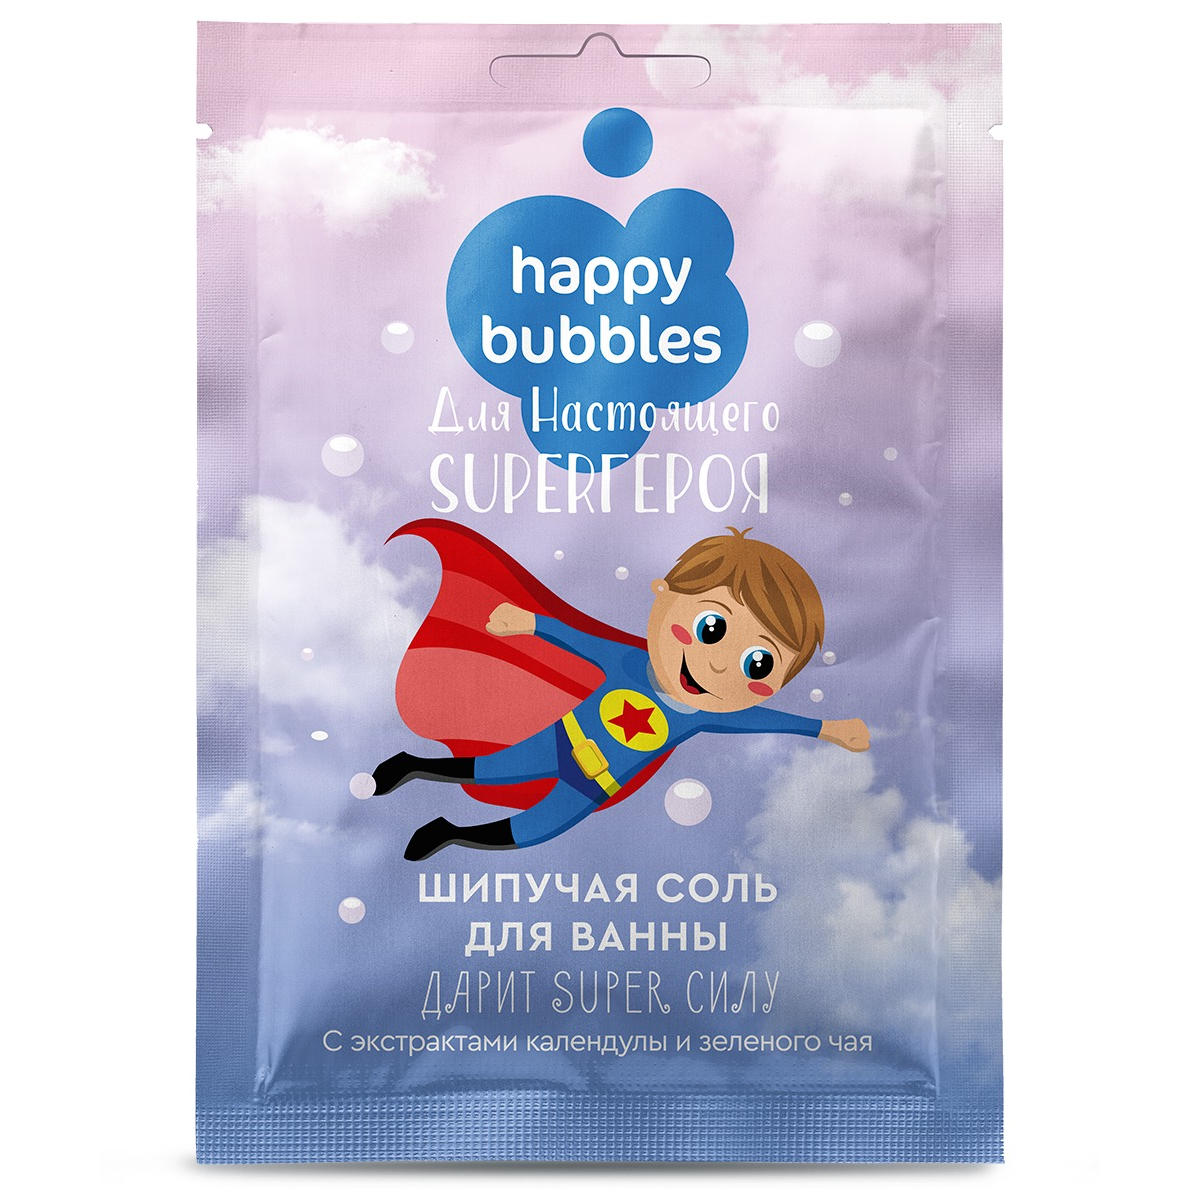 Соль для ванны Happy bubbles для настоя Super героя 100г бурлящий шарик для ванны cafe mimi авокадо и гуава 120 г